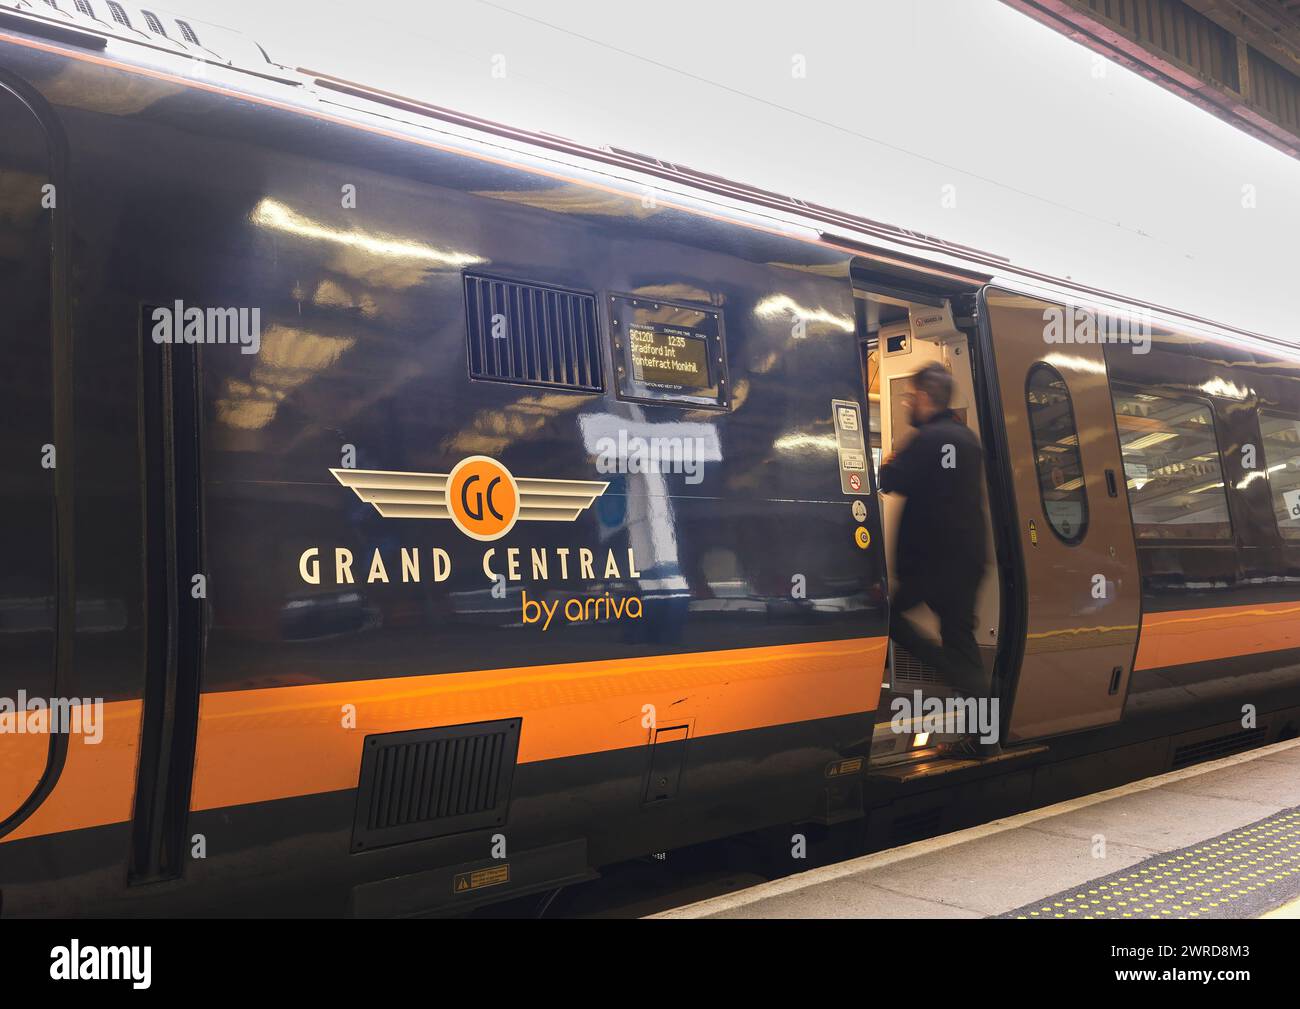 Grand Central (GC) mit dem Arriva-Zug stationiert im Bahnhof Doncaster, England. Stockfoto